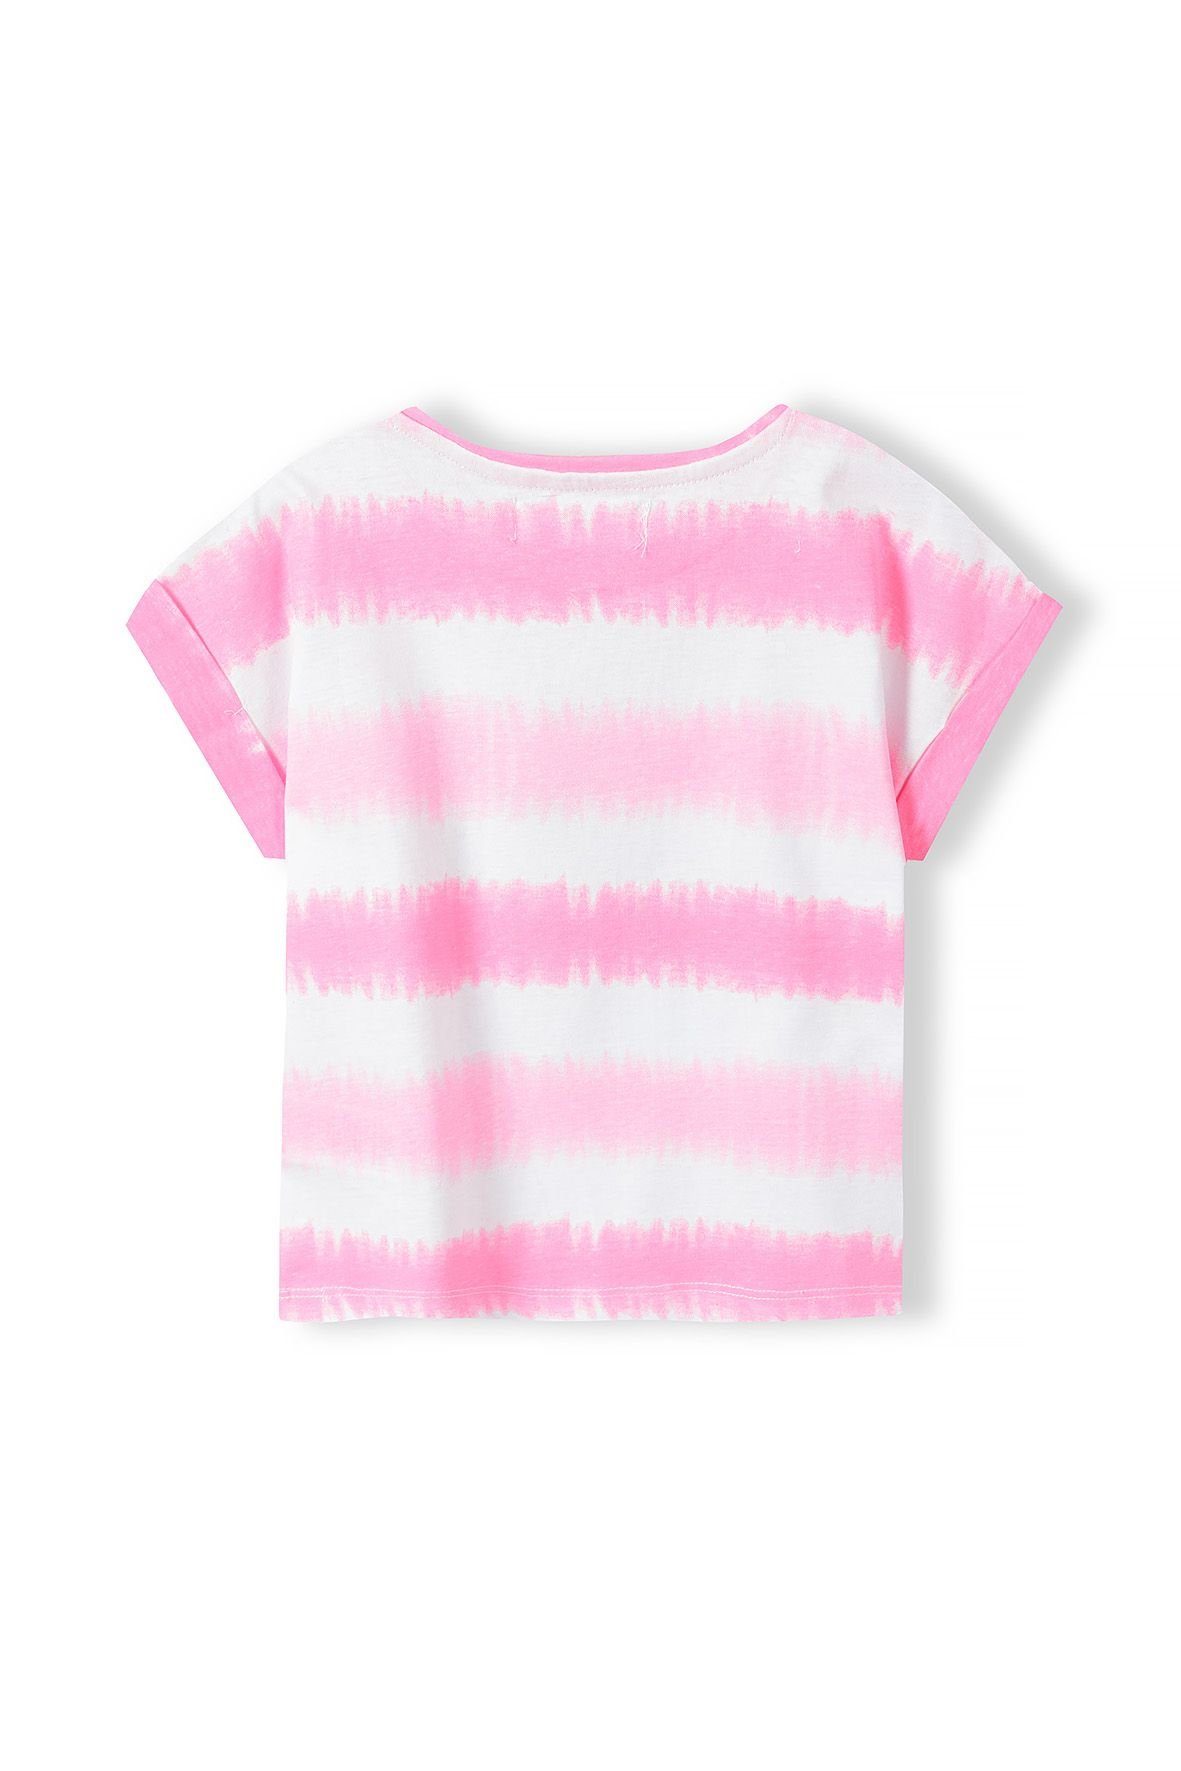 MINOTI T-Shirt Rosa mit T-Shirt Aufdruck Modisches (1y-8y)